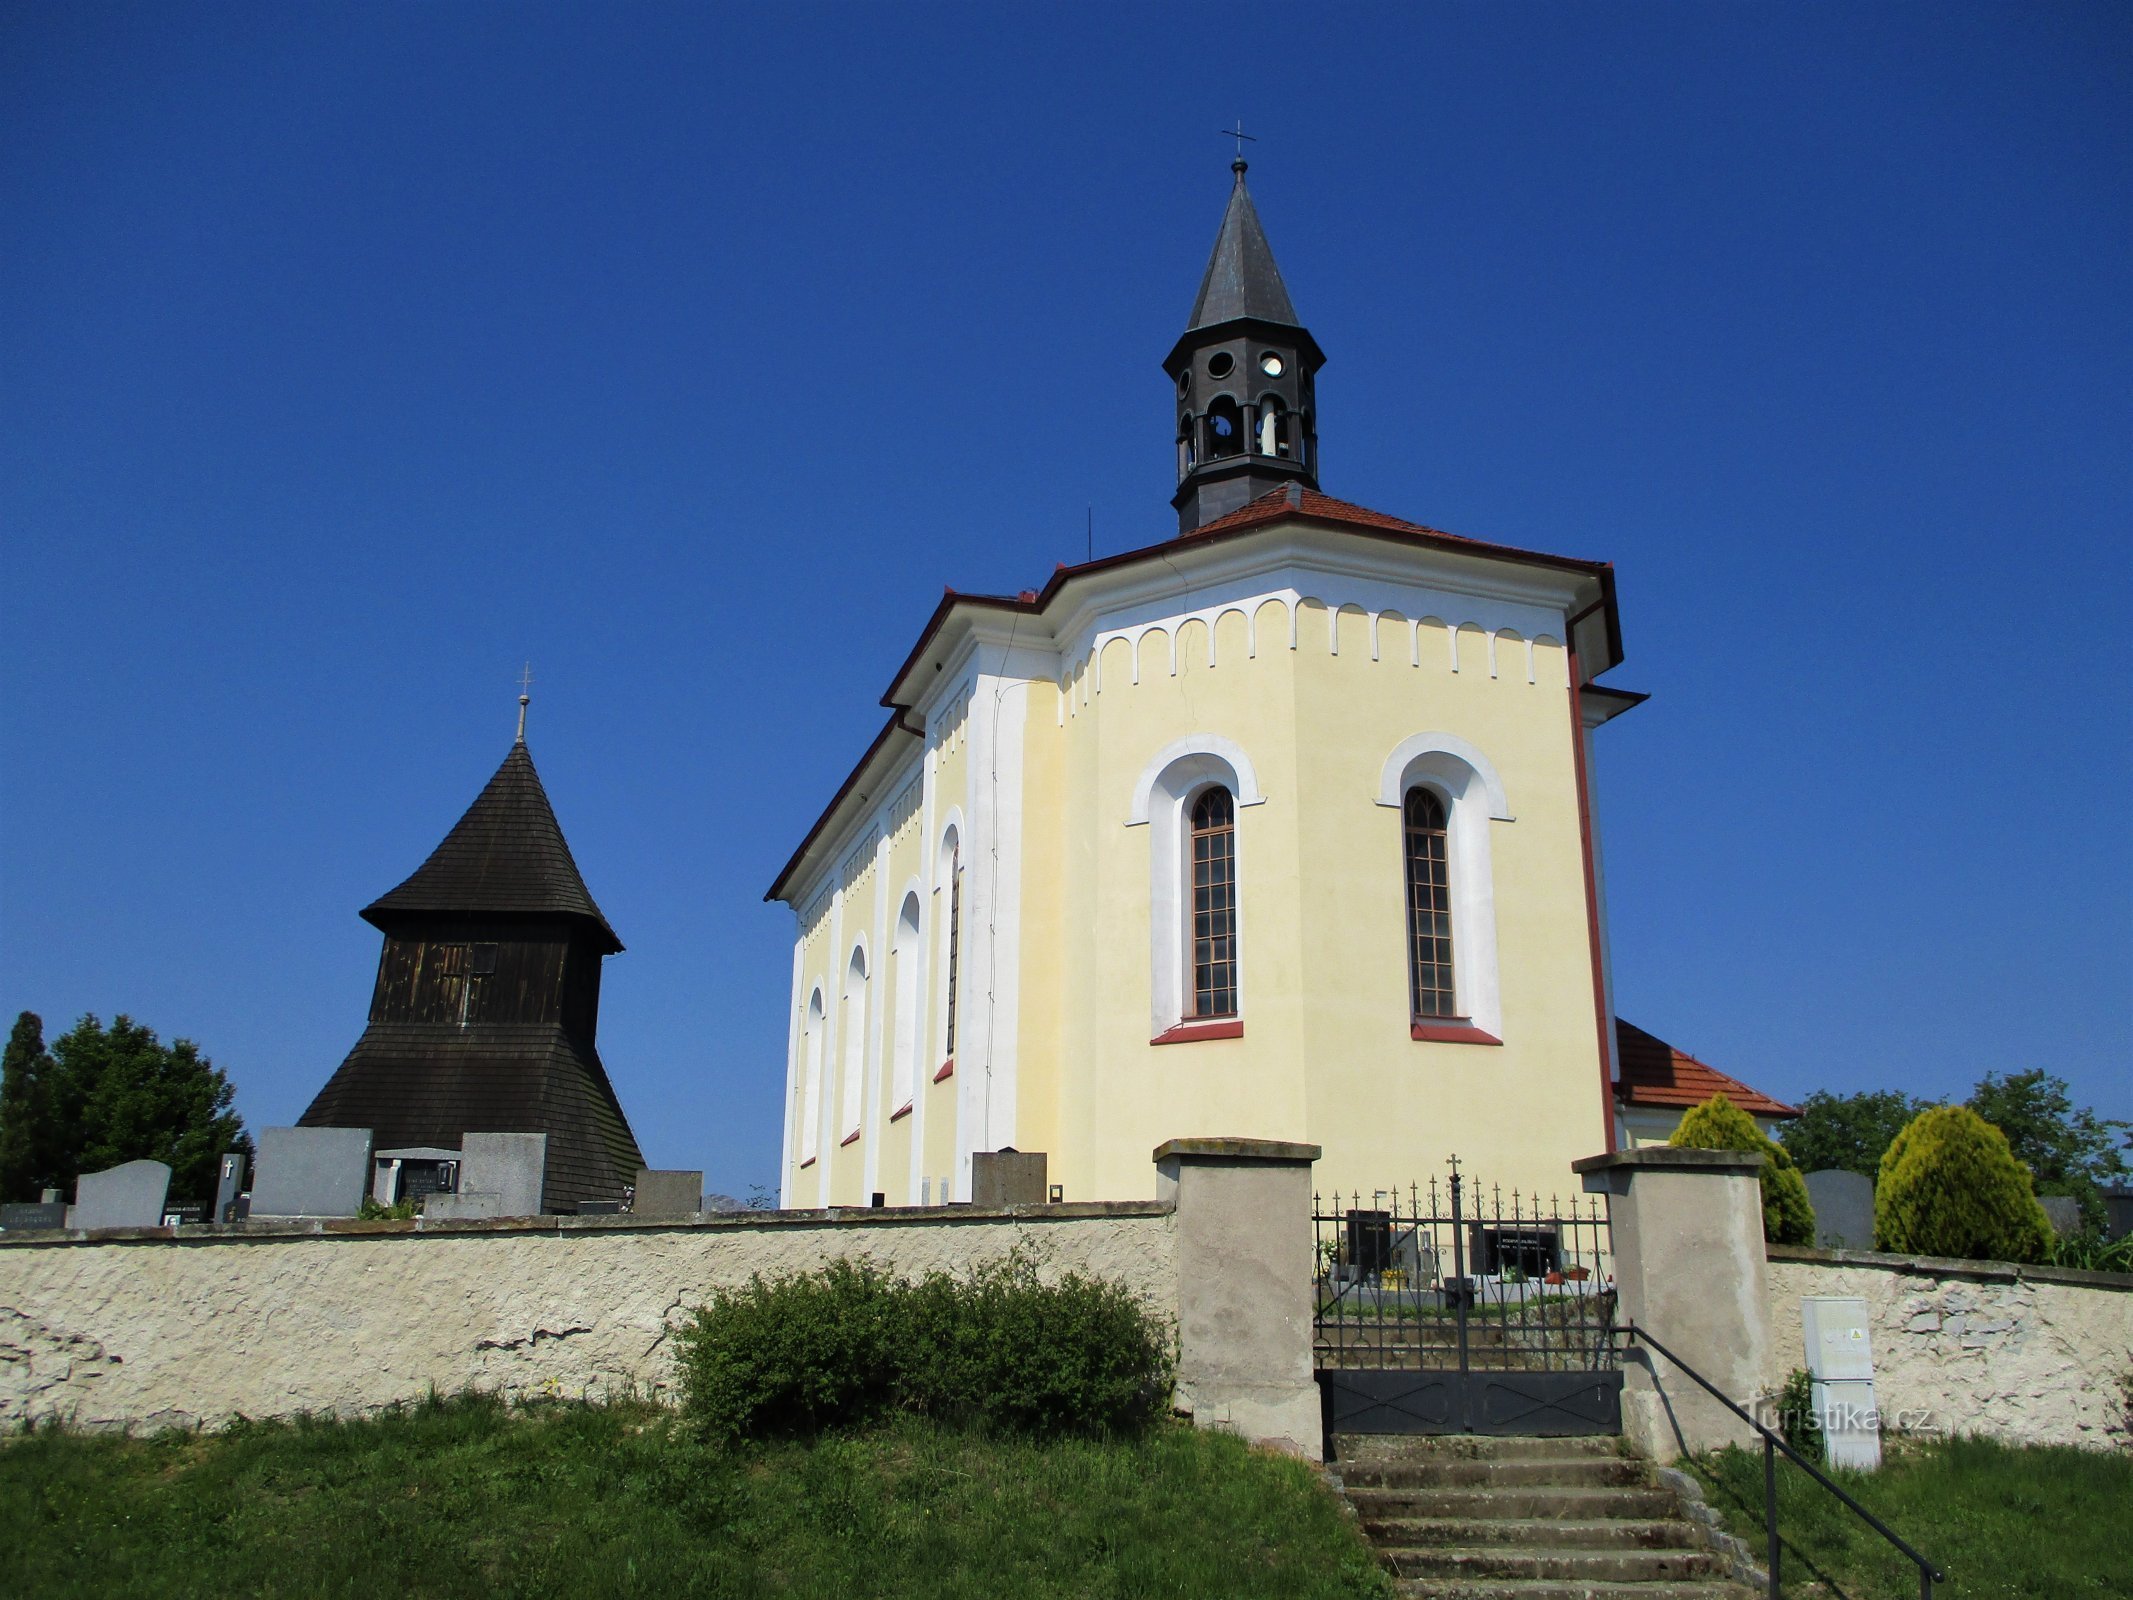 Pyhän kirkko Venceslas kellotornin kanssa (Horní Ředice, 16.5.2020)